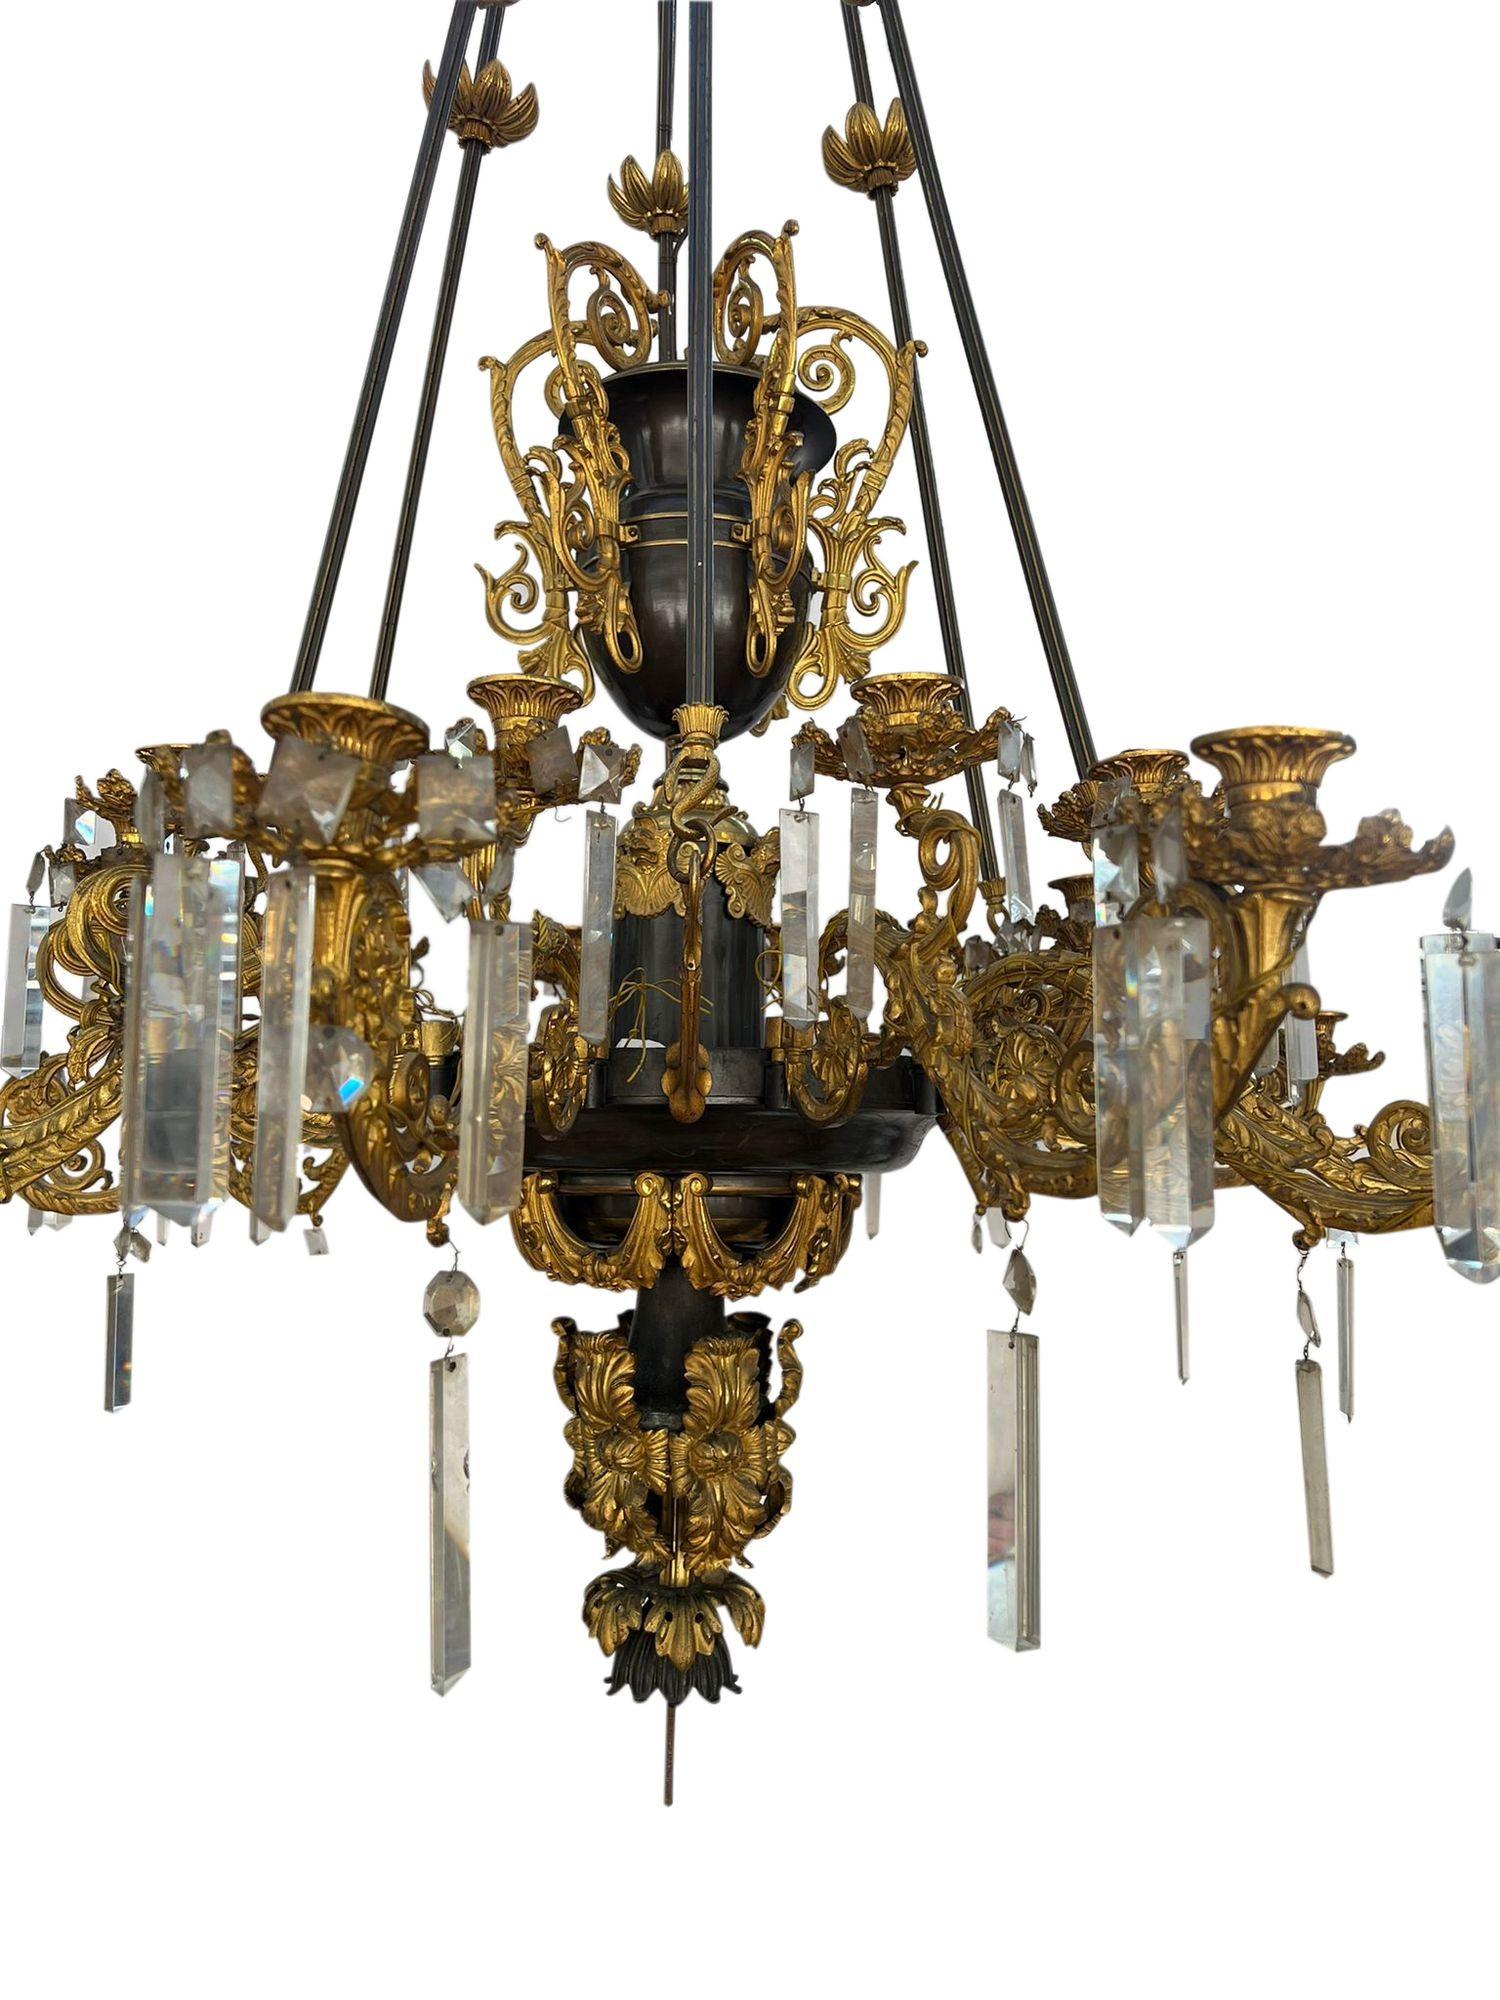 Un grand et impressionnant lustre de style Louis XVI en bronze et bronze doré à 12 branches, avec une urne centrale à 5 poignées, de merveilleuses branches feuillagées à enroulement avec des gouttes en verre taillé, une guirlande en bronze doré et